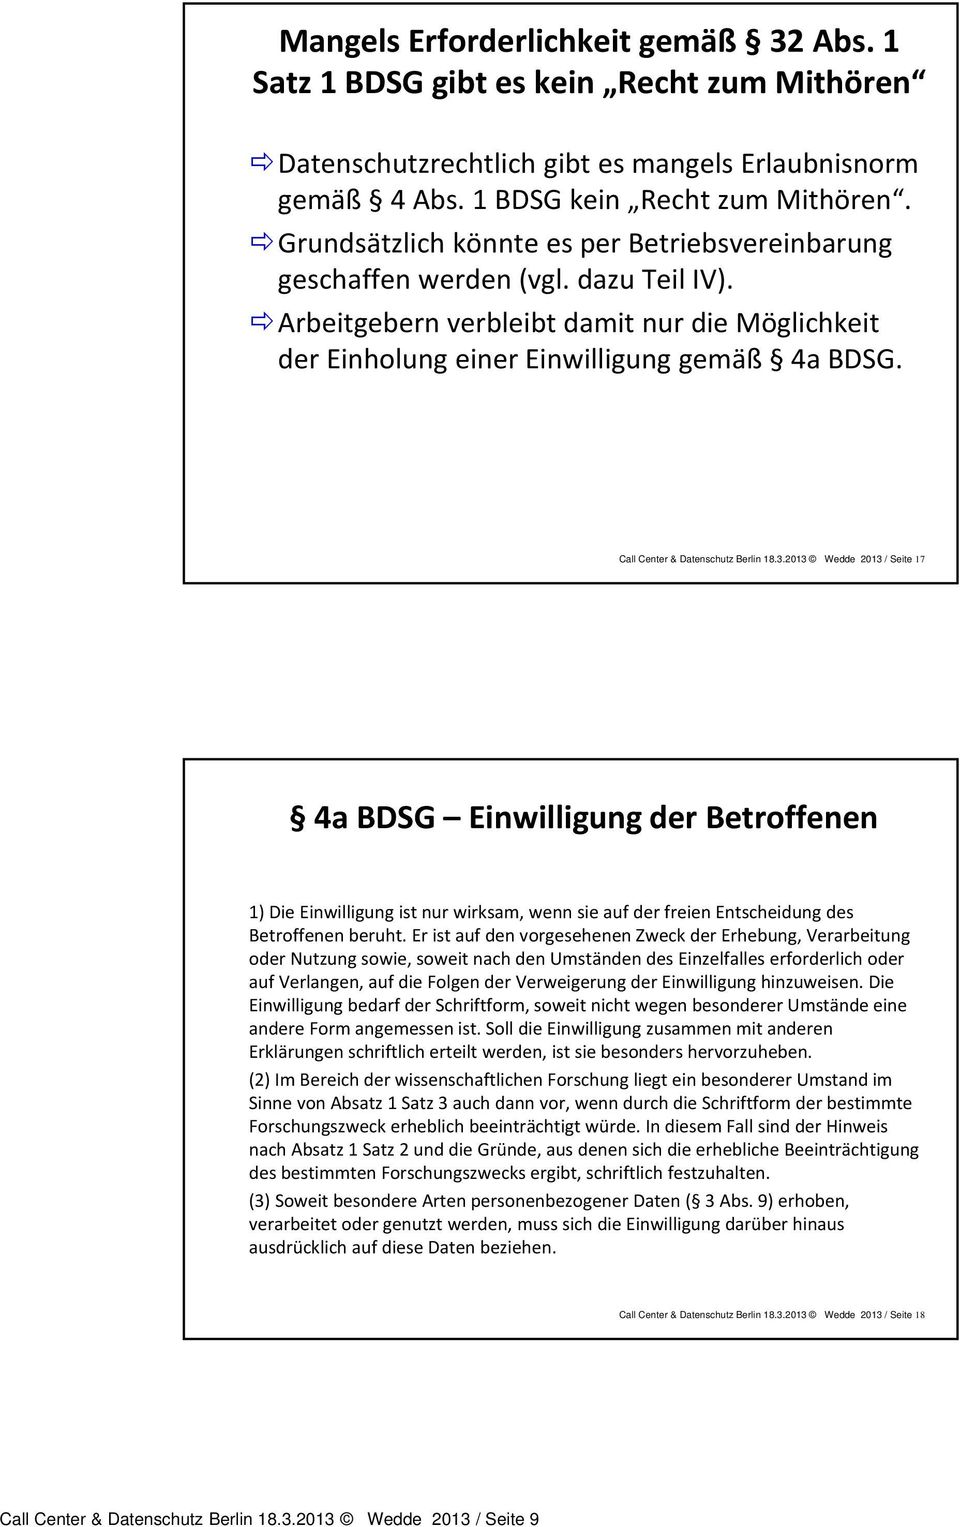 Call Center & Datenschutz Berlin 18.3.2013 Wedde 2013 / Seite 17 4a BDSG Einwilligung der Betroffenen 1) Die Einwilligung ist nur wirksam, wenn sie auf der freien Entscheidung des Betroffenen beruht.